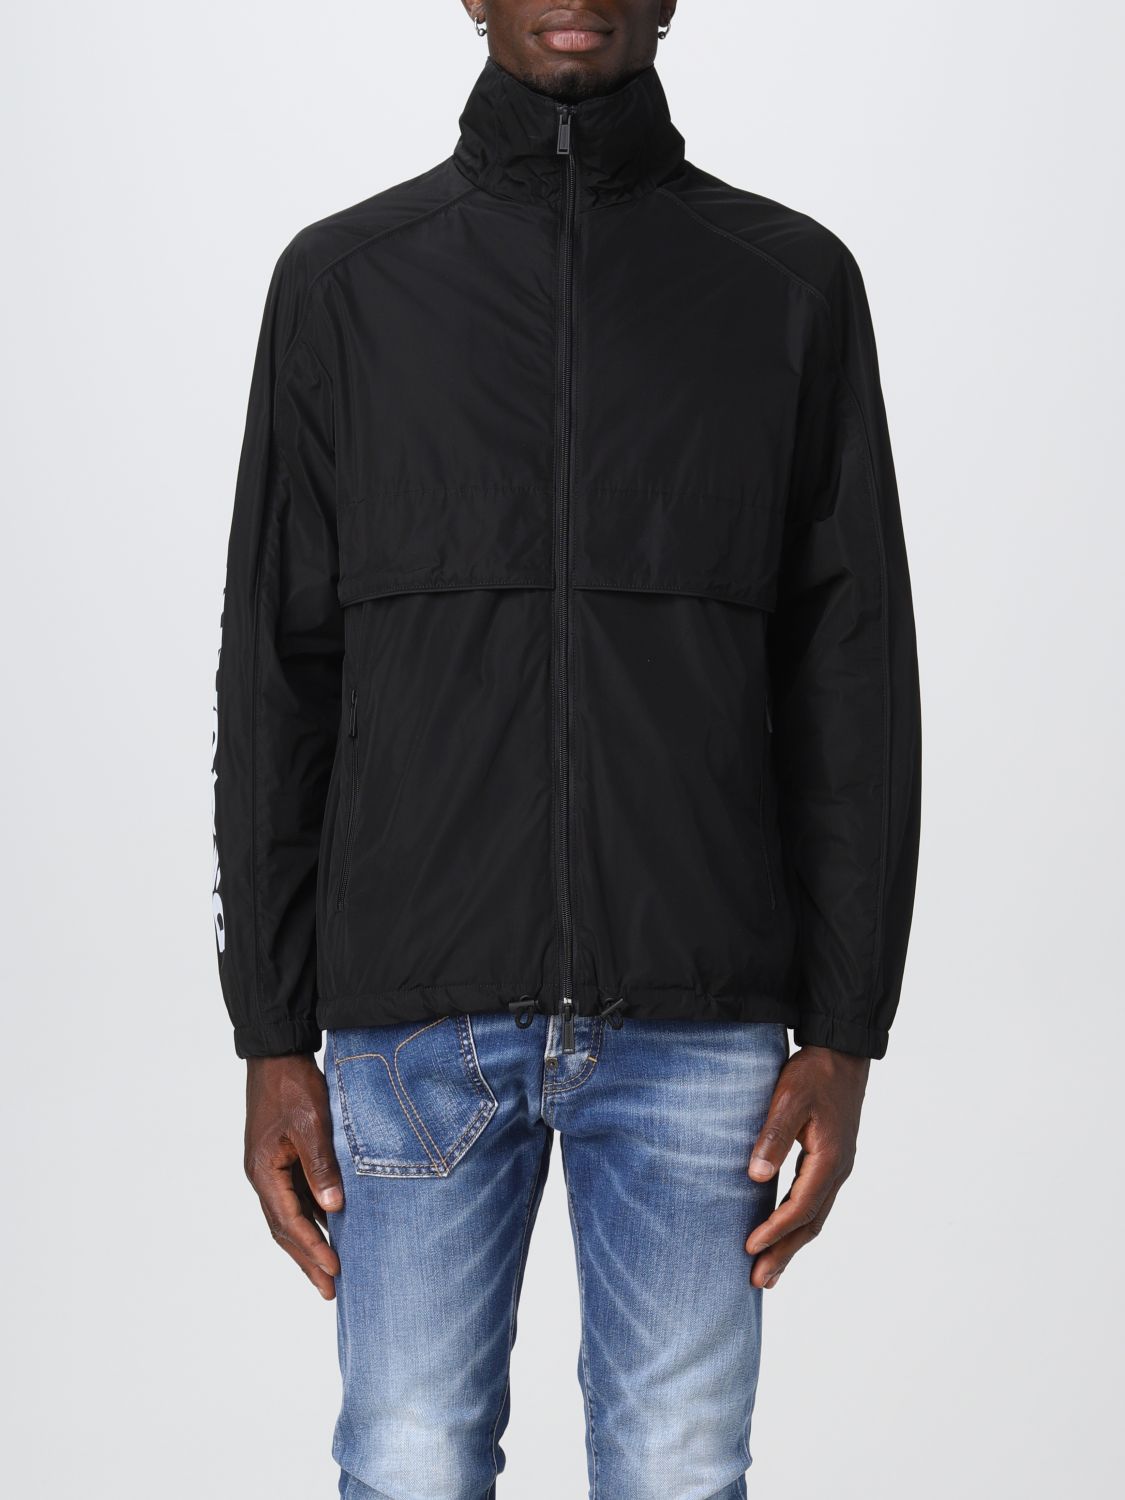 Dsquared2 Outlet: jacket for man - Black | Dsquared2 jacket ...